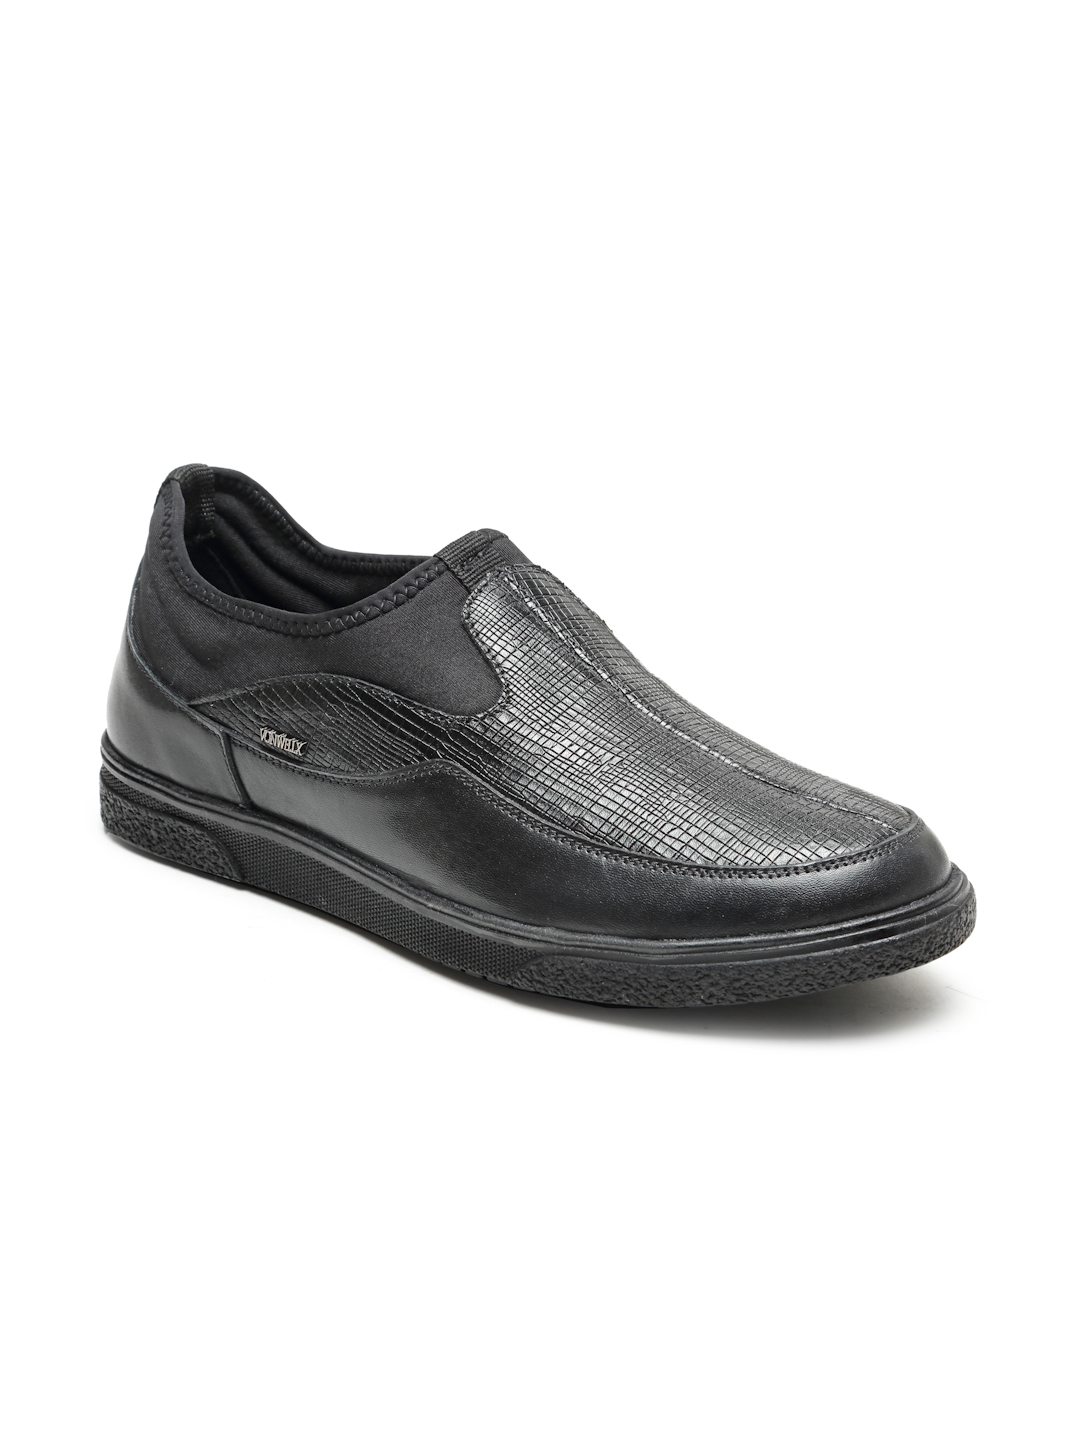 Buy Von Wellx Germany Comfort Men's Black Casual Loafers Everett Online in Dehradun